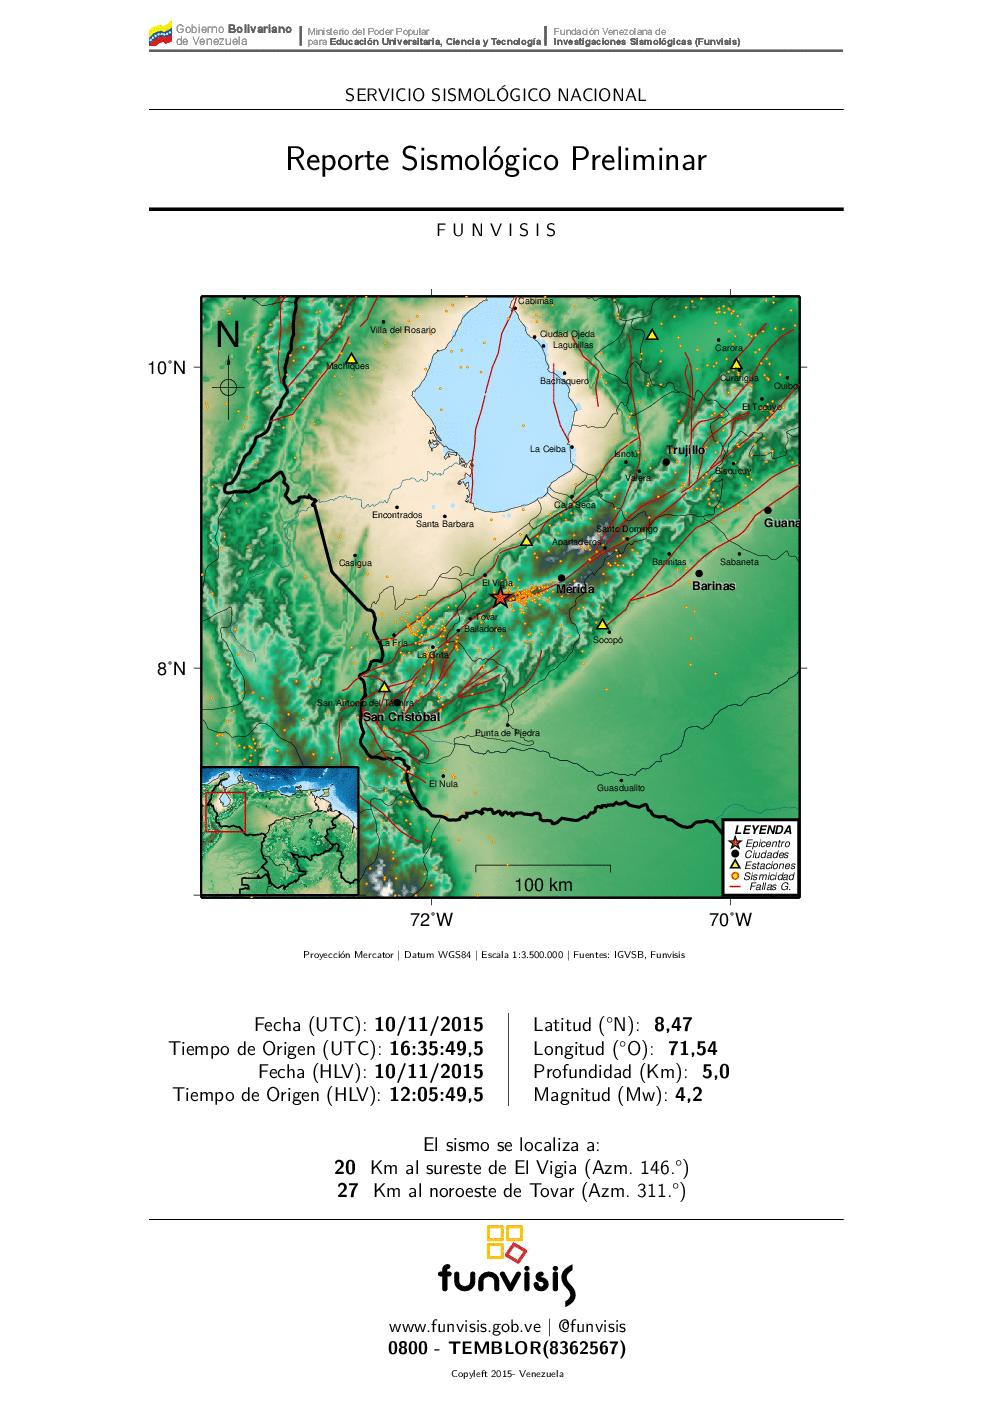 Nuevo sismo de 4.2 se registró en El Vigía